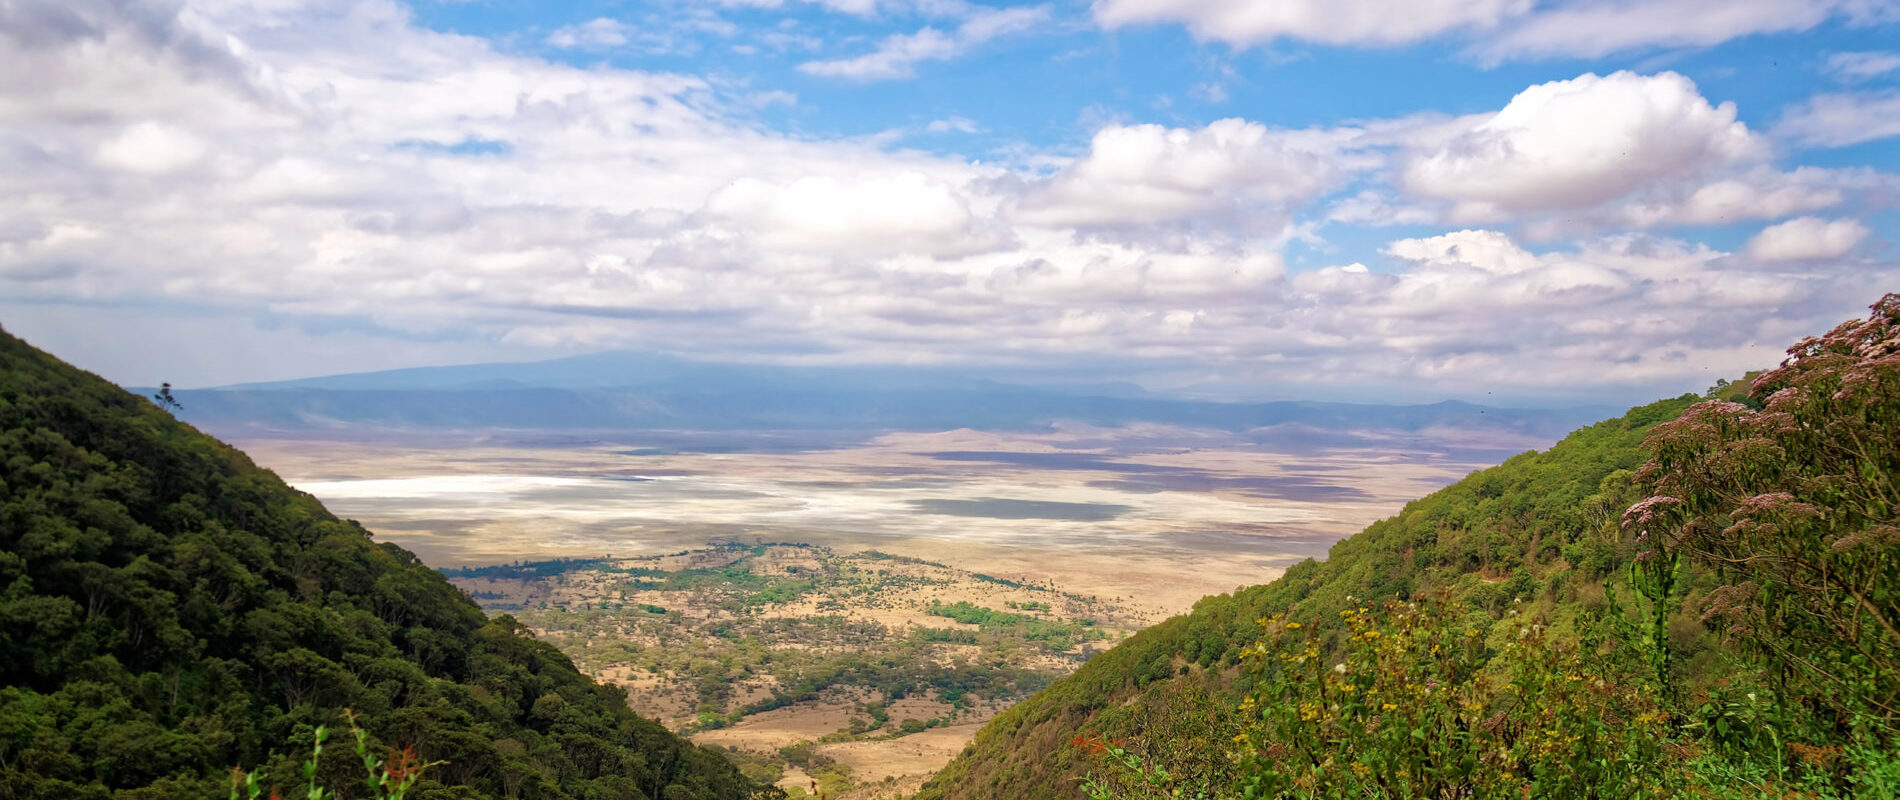 uizicht op krater van ngorongoro conservation area